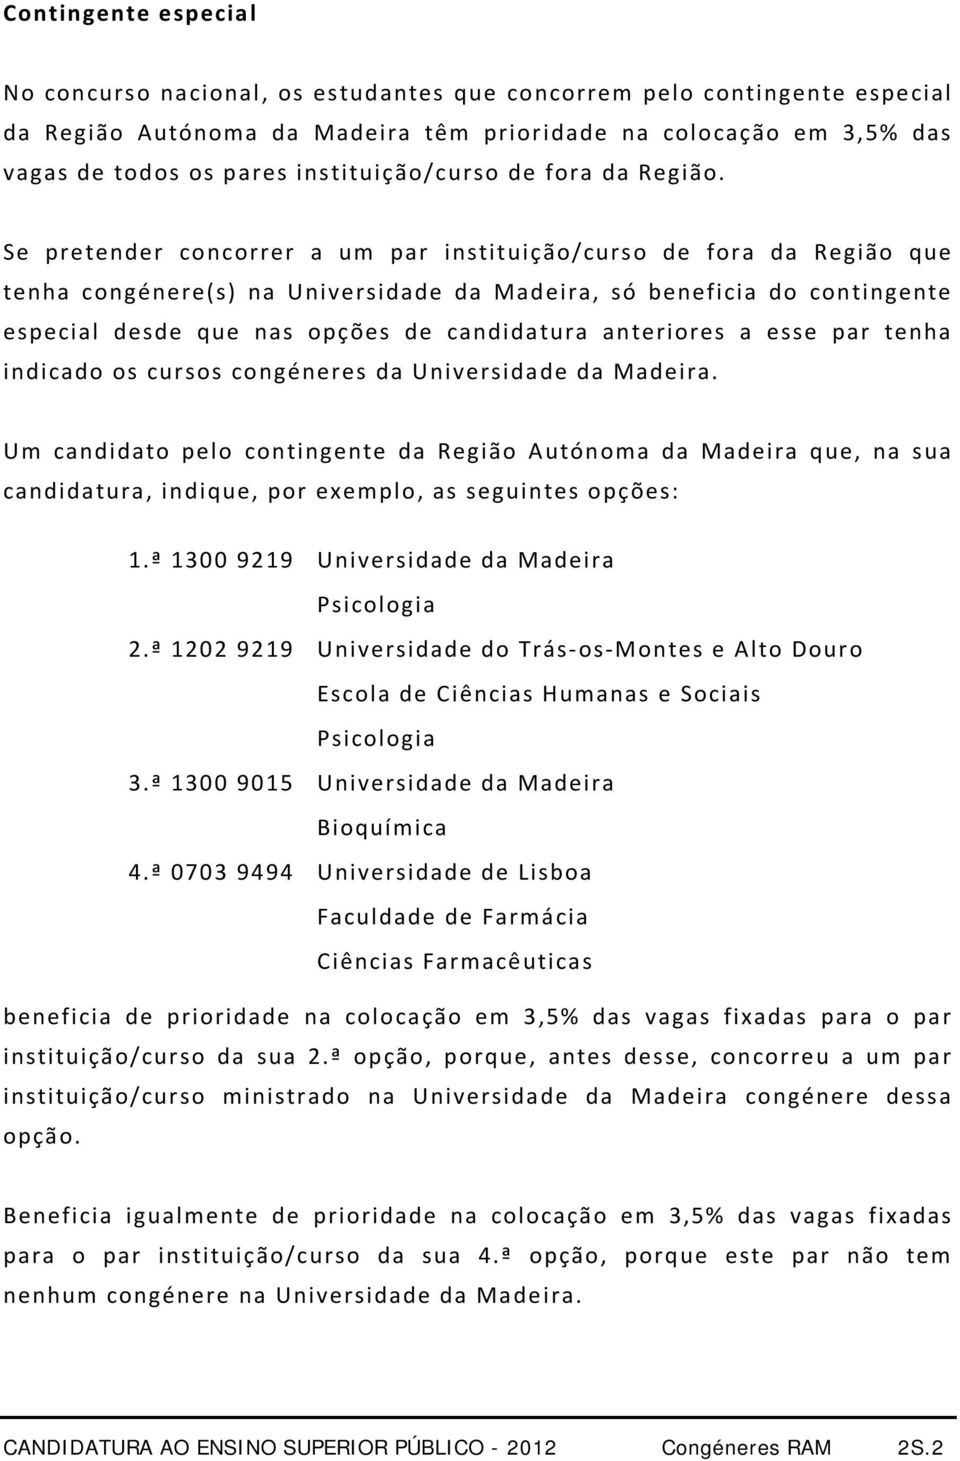 Se pretender concorrer a um par instituição/curso de fora da Região que tenha congénere(s) na Universidade da Madeira, só beneficia do contingente especial desde que nas opções de candidatura